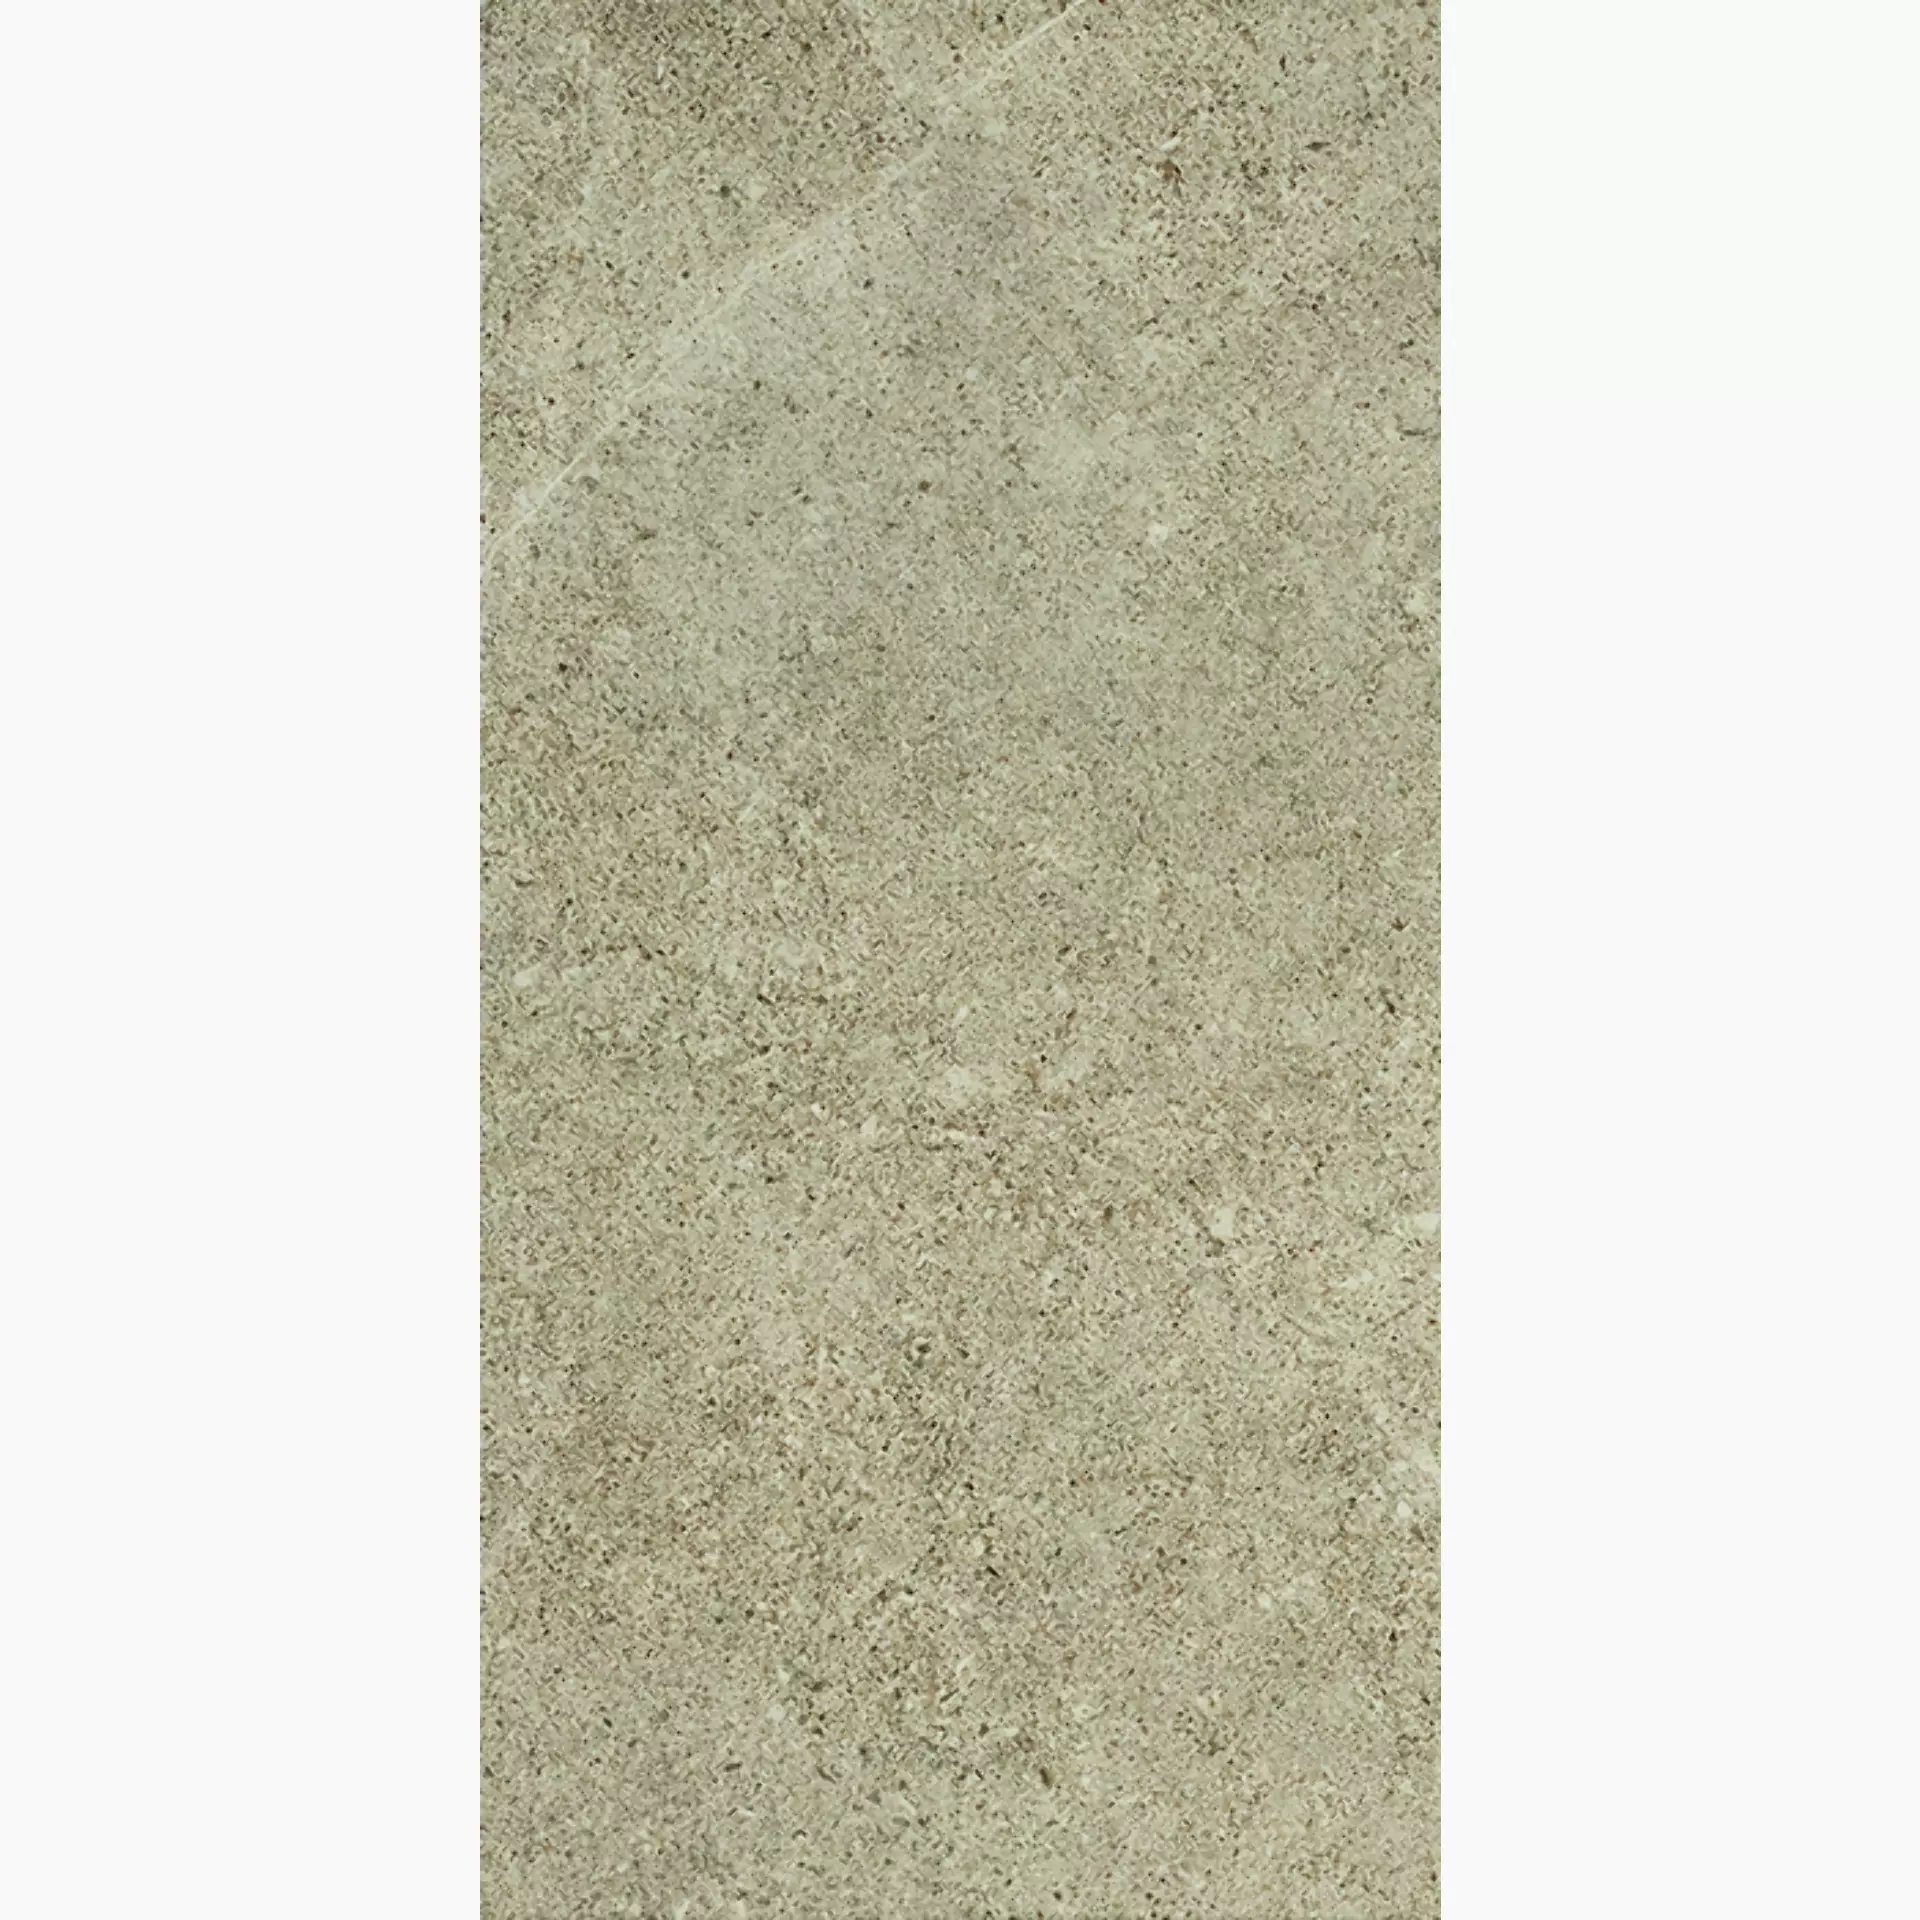 Bodenfliese,Wandfliese Cercom Archistone Sand Naturale Sand 1081726 natur 60x120cm rektifiziert 9,5mm